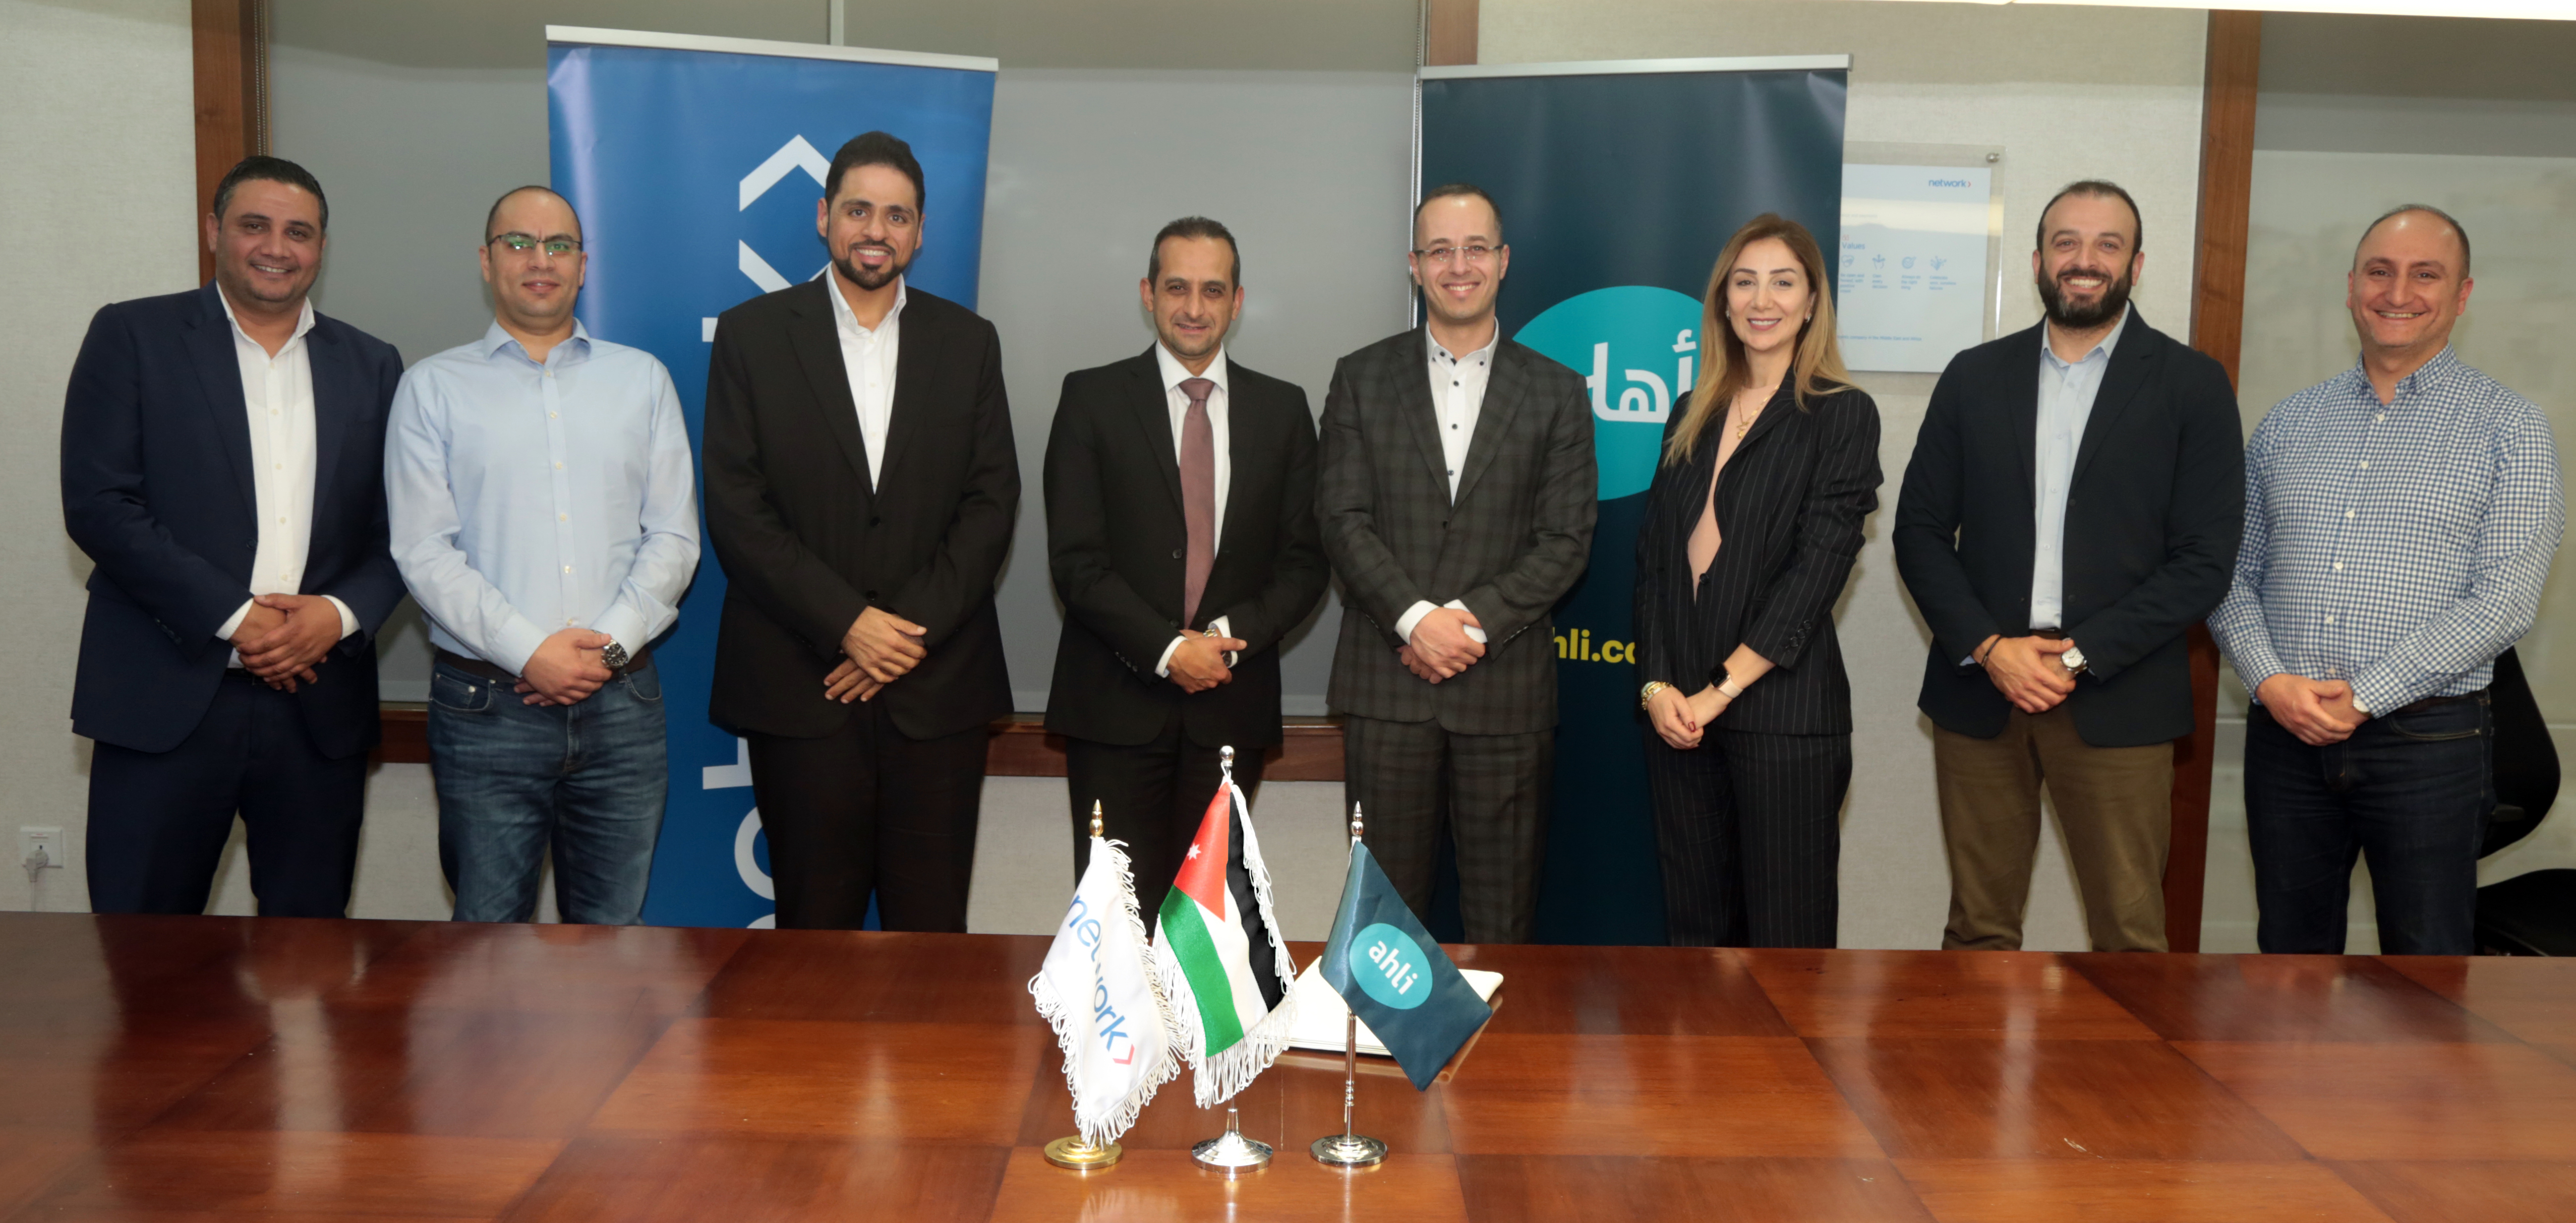 البنك الأهلي الأردني يوقع شراكة استراتيجية مع شركة نتورك إنترناشيونال - الأردن